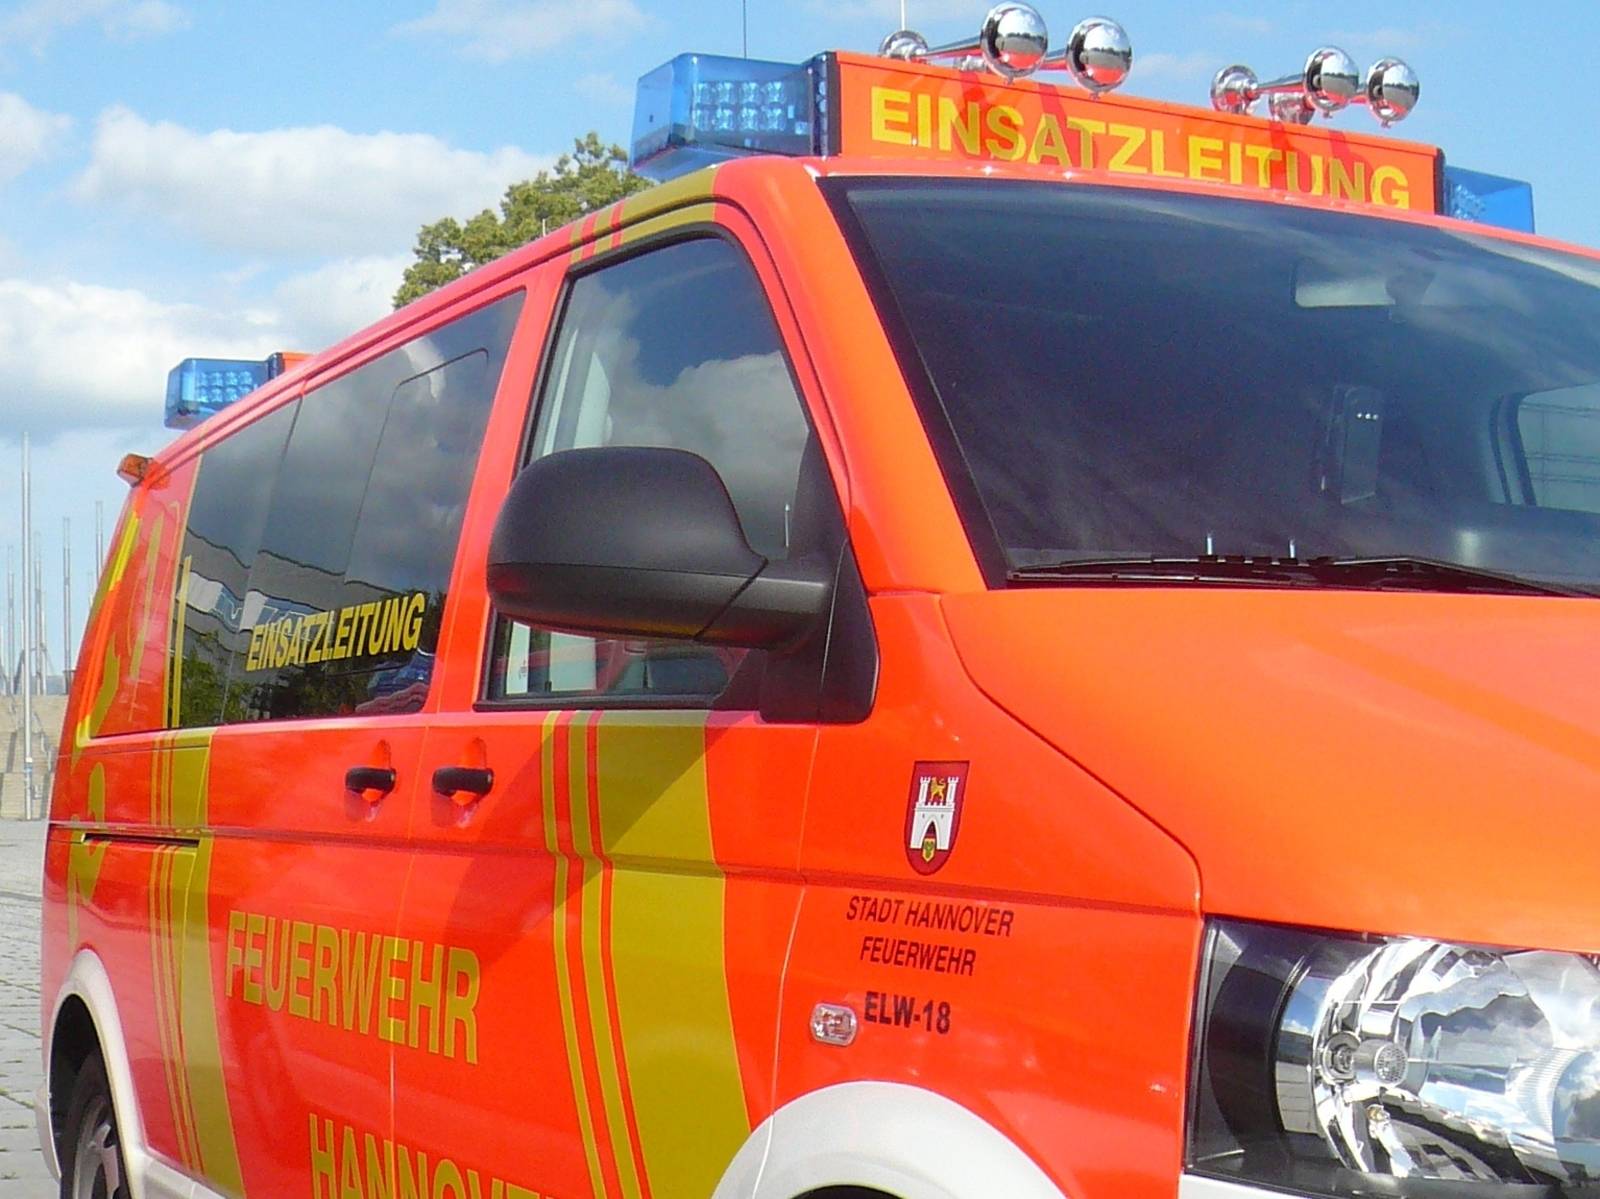 Fahrzeug der Einsatzleitung -Feuerwehr Hannover